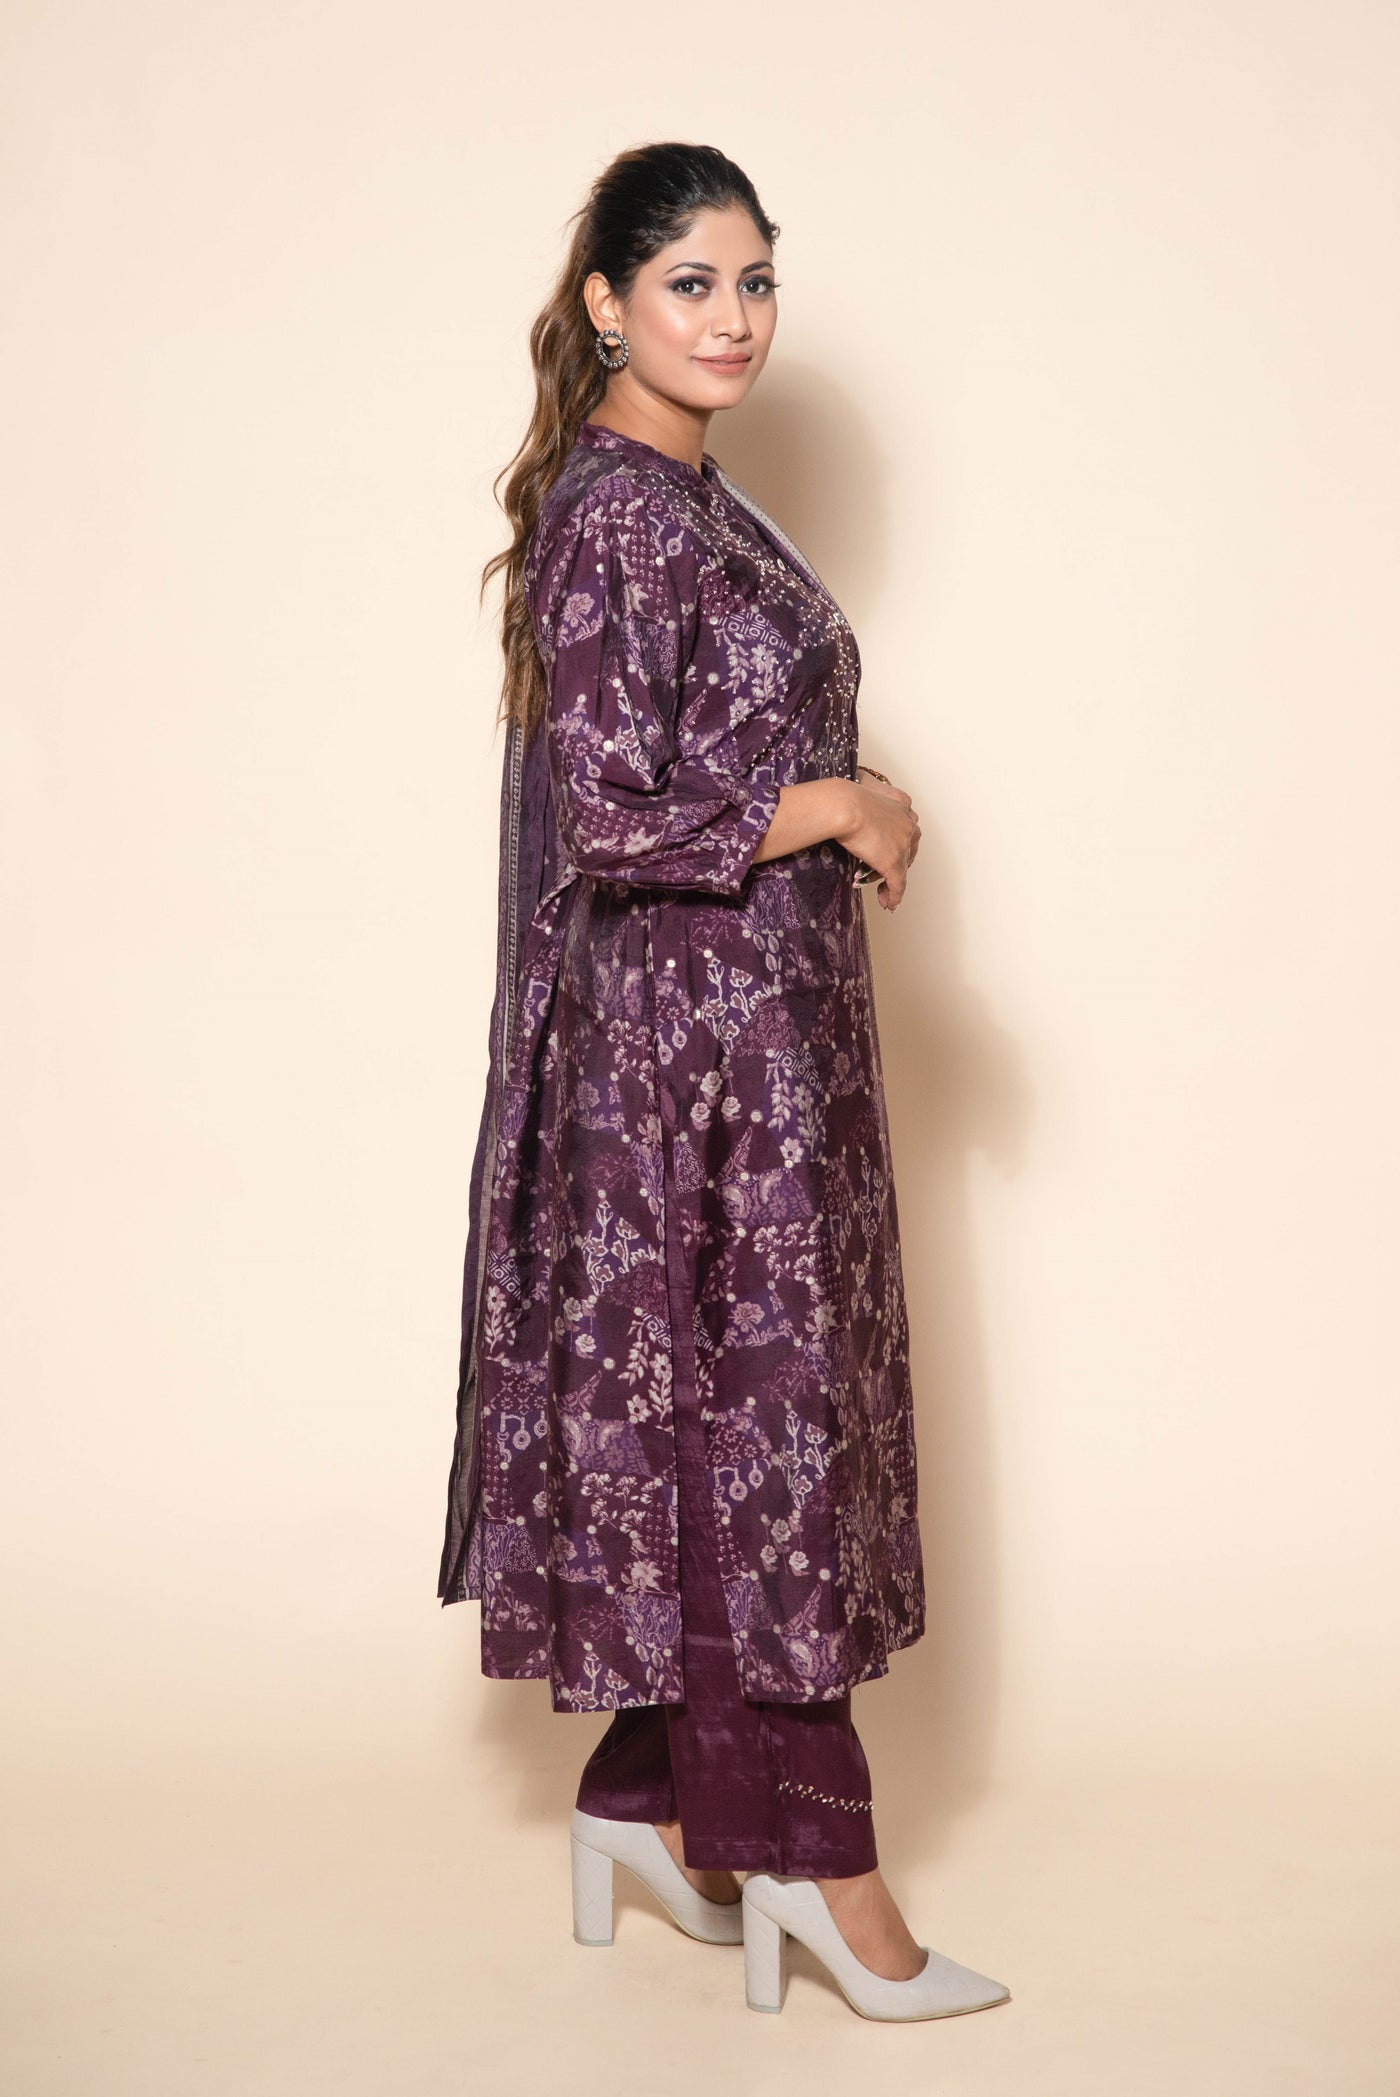 model posing wearing purple silk suit